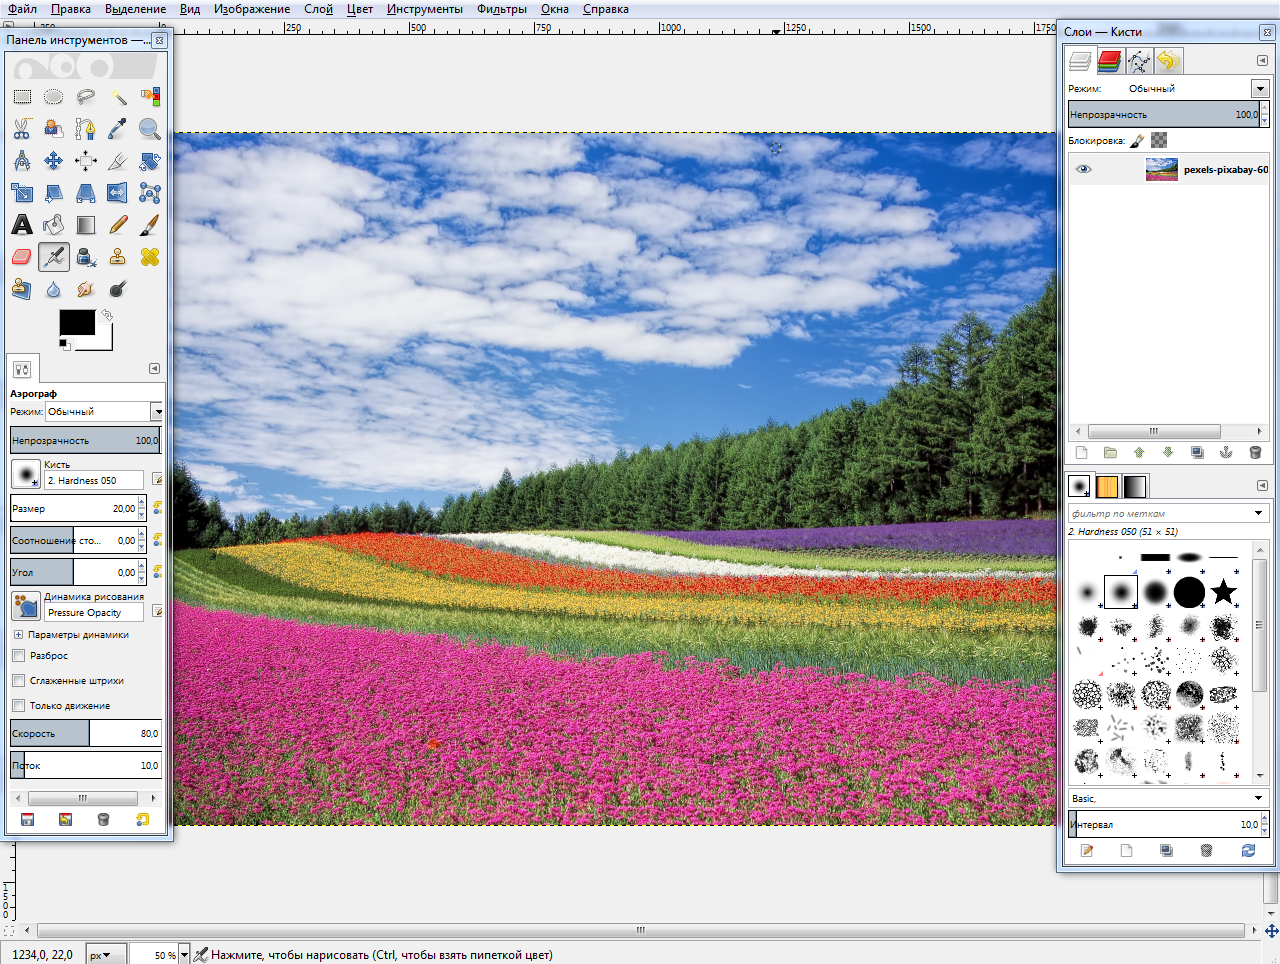 Обзор программы PaintShop Pro, что представляет из себя программа для обработки фото от Coral Как установить, правила пользования, преимущества, недостатки Отзывы пользователей, список аналогов